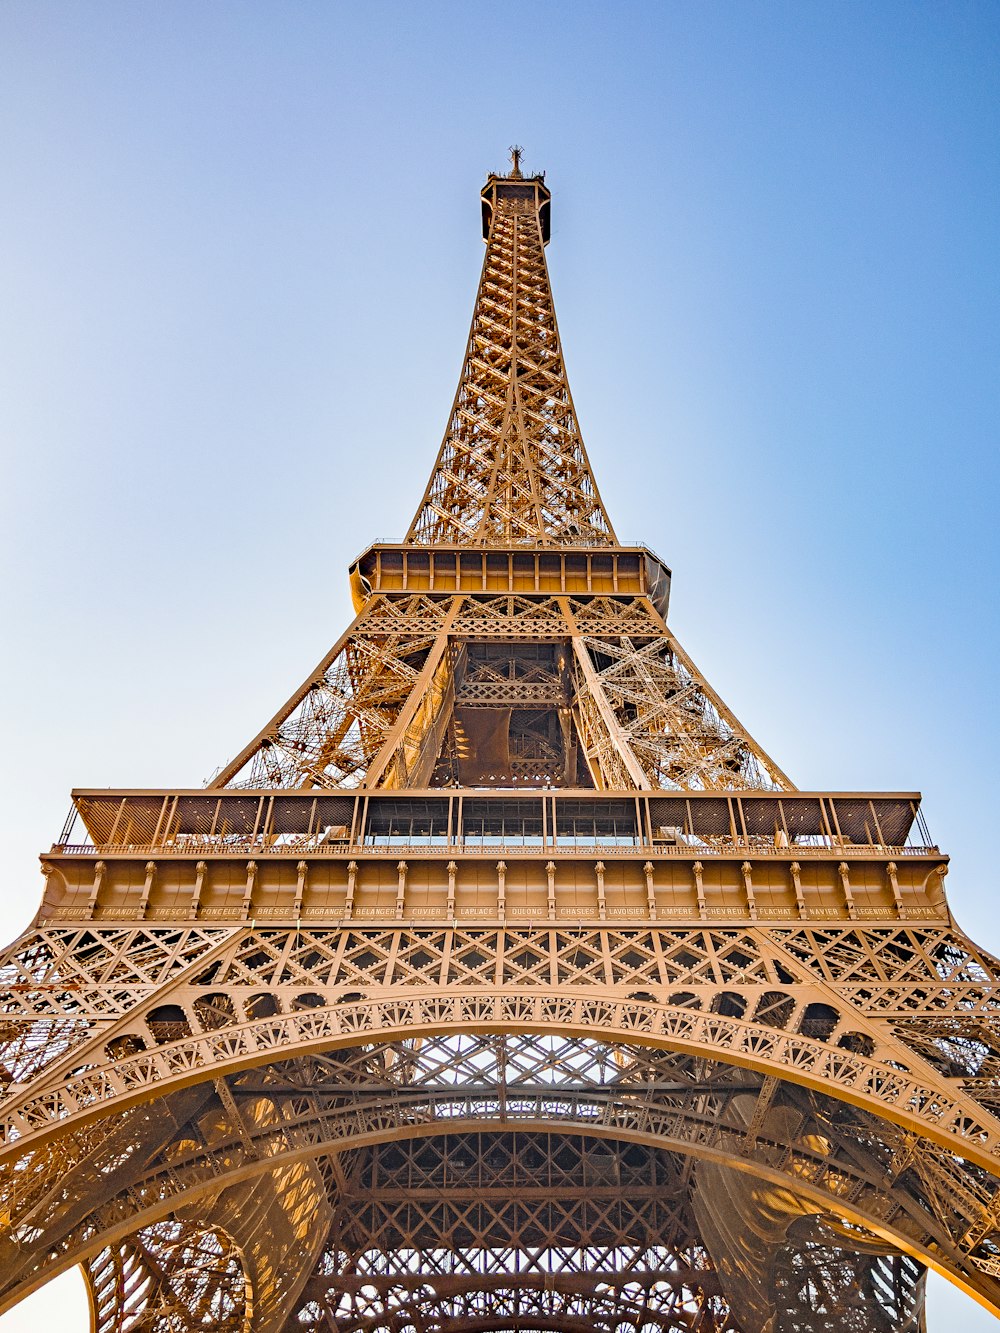 La cima della Torre Eiffel contro un cielo blu